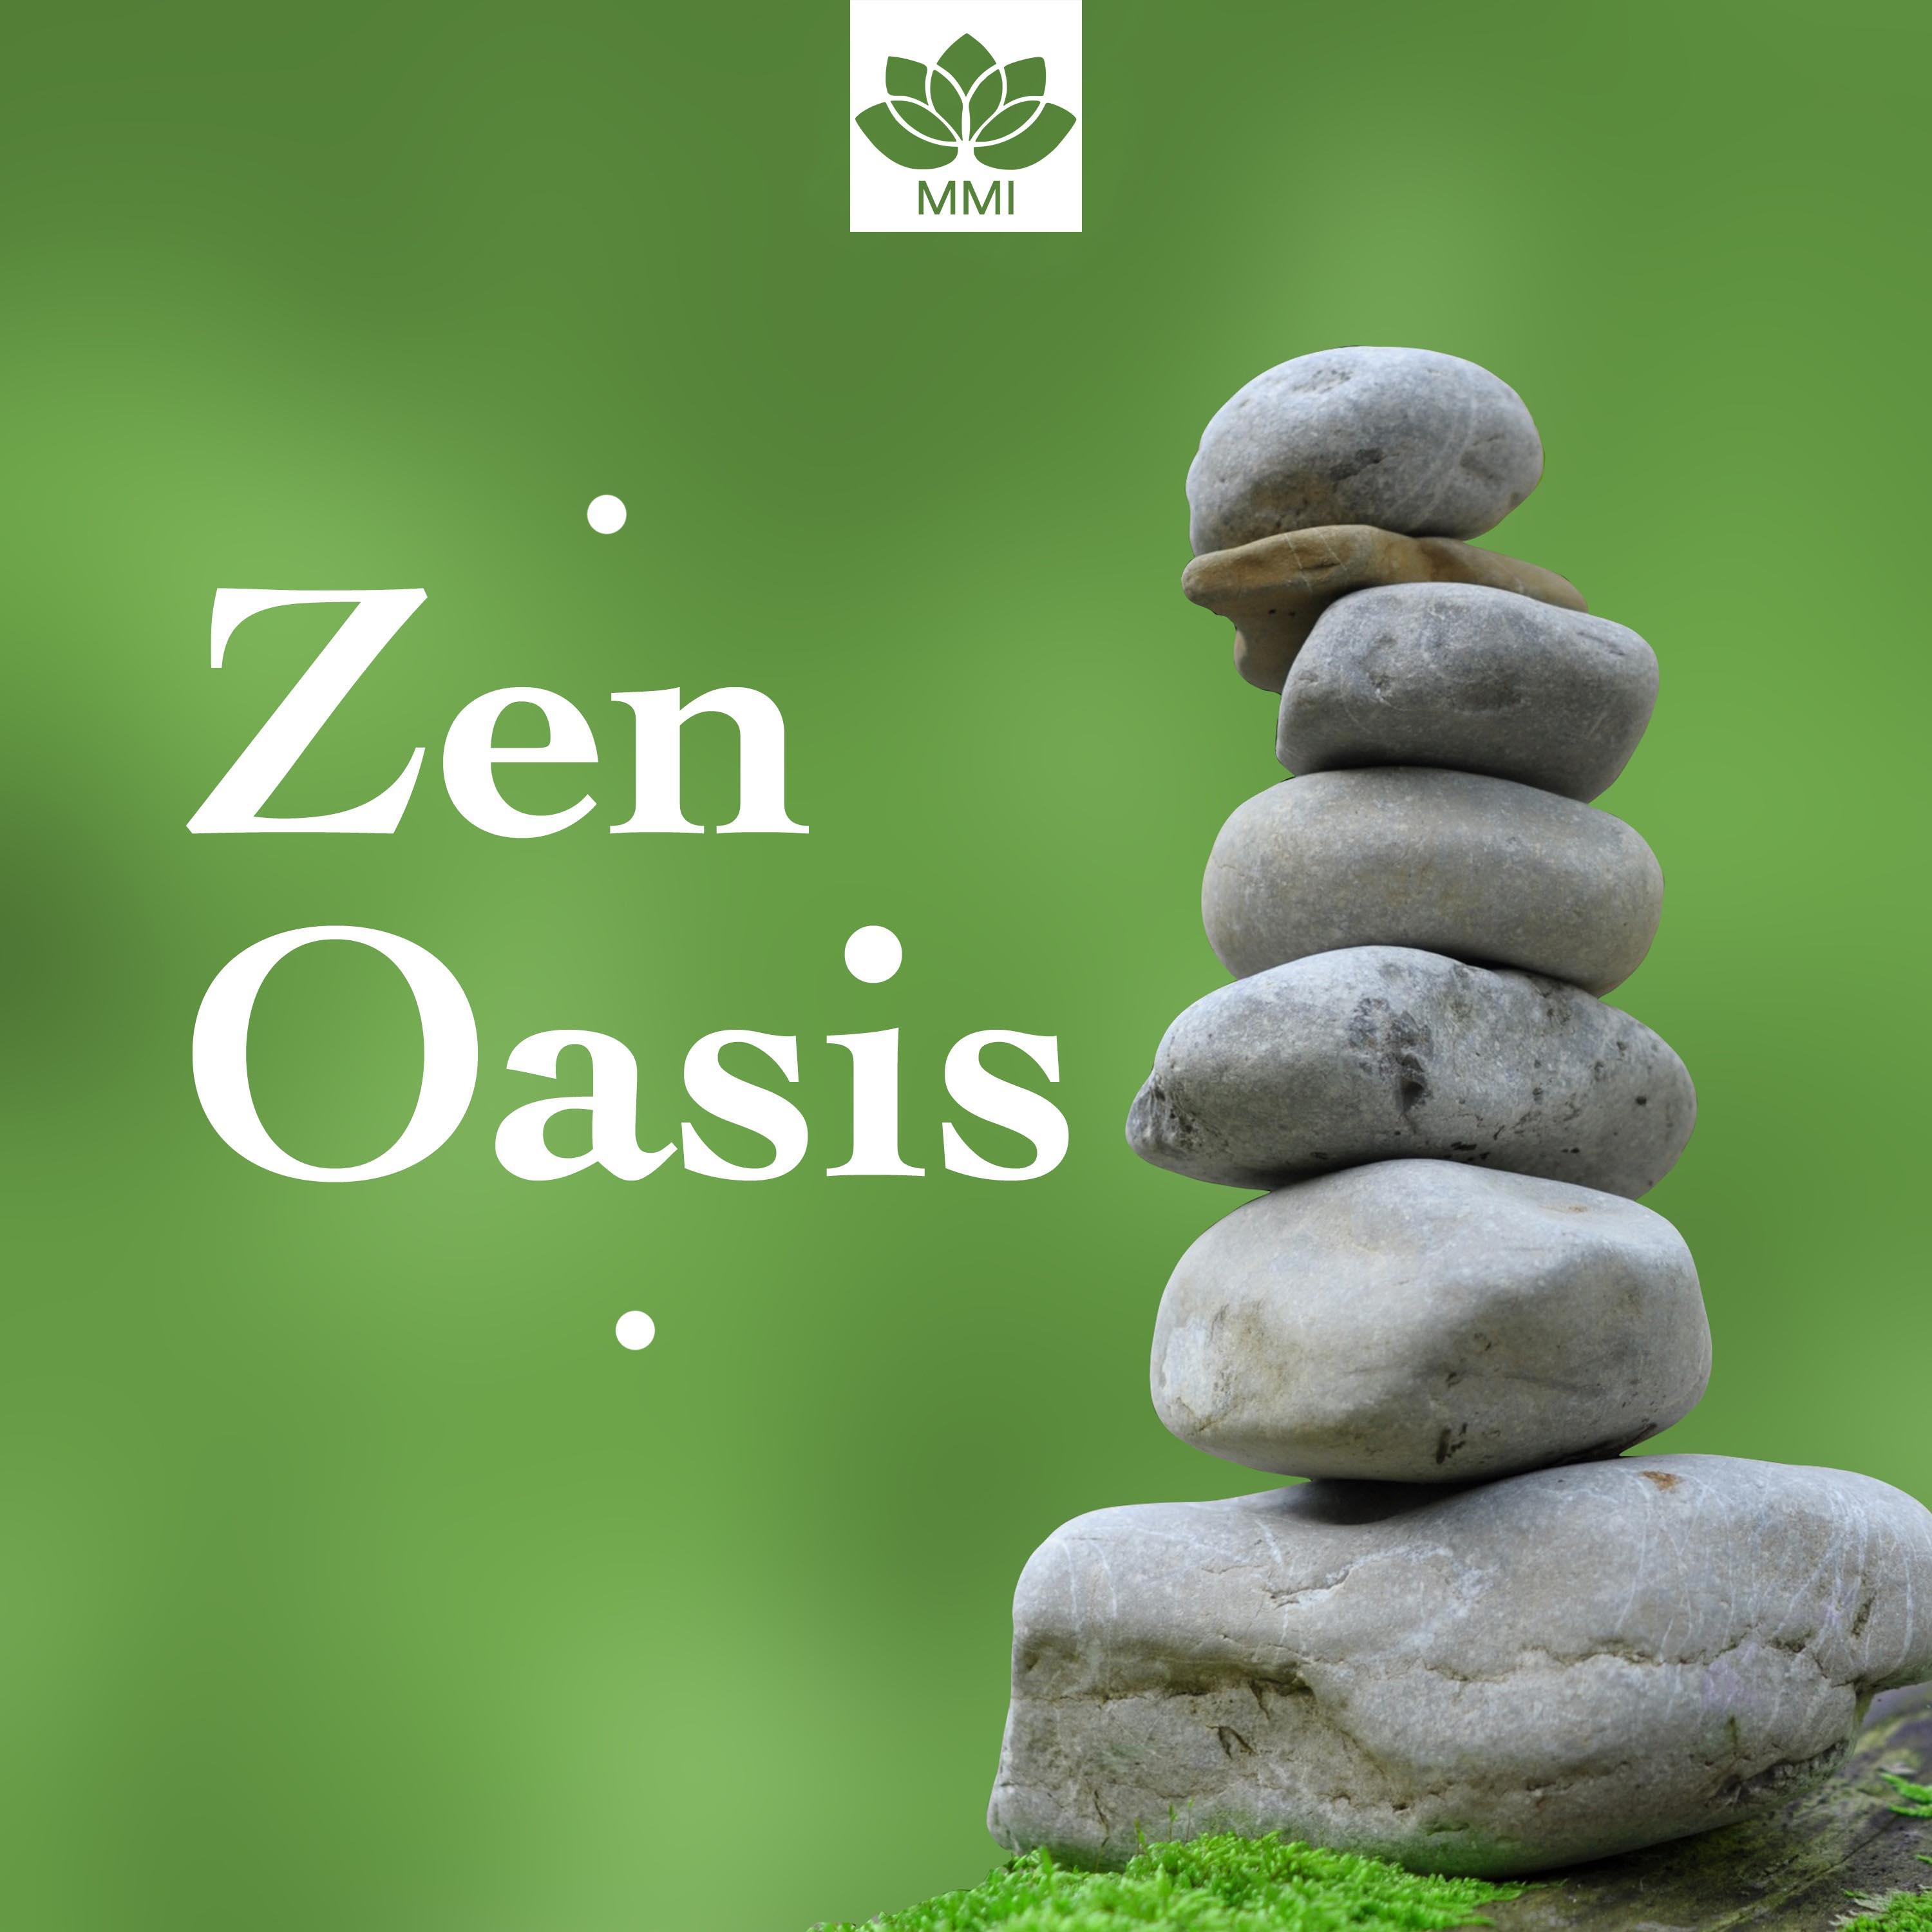 Zen Oasis - Zen Music, Oriental Music, Nature Sounds, Relaxation